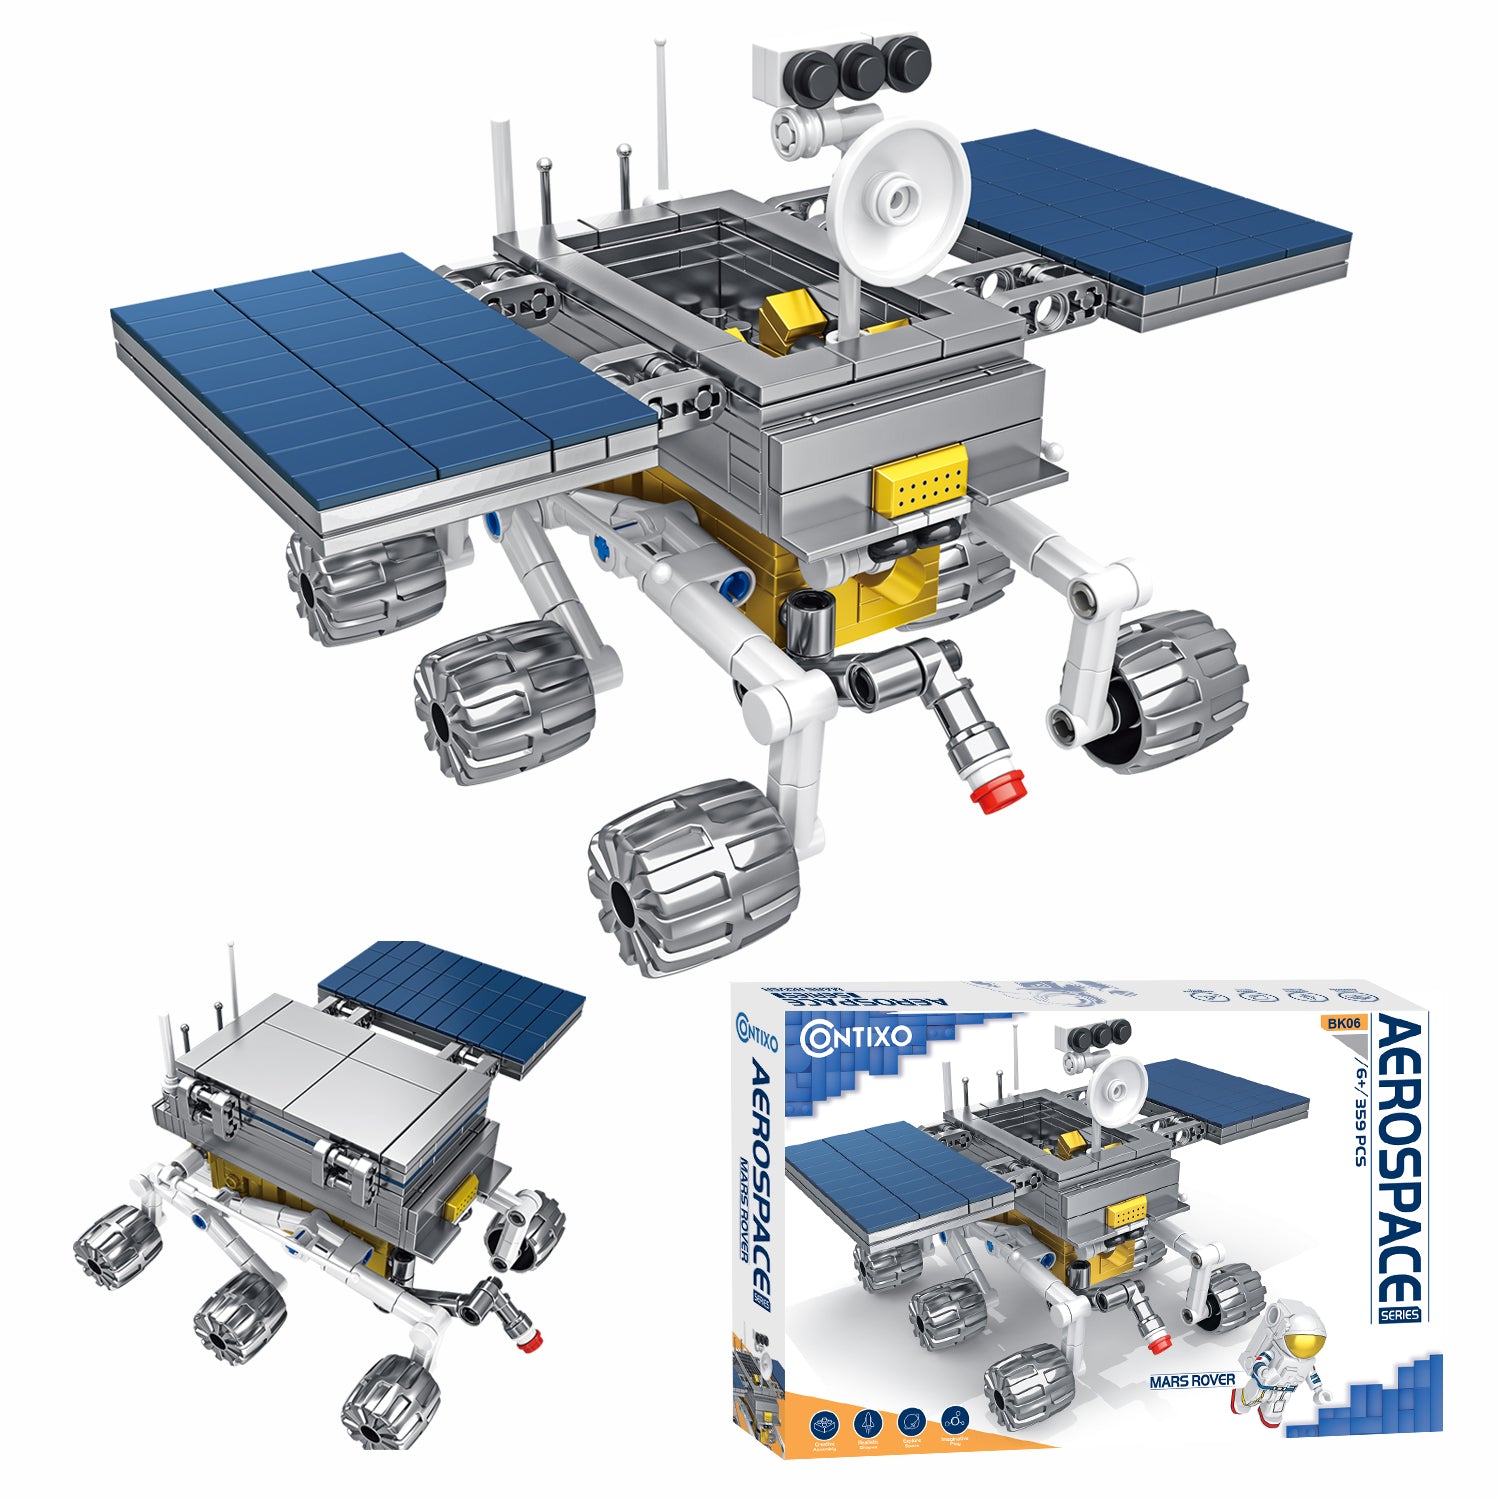 Contixo BK06 Aerospace Series Mars Rover Building Block Set - 359 PCS